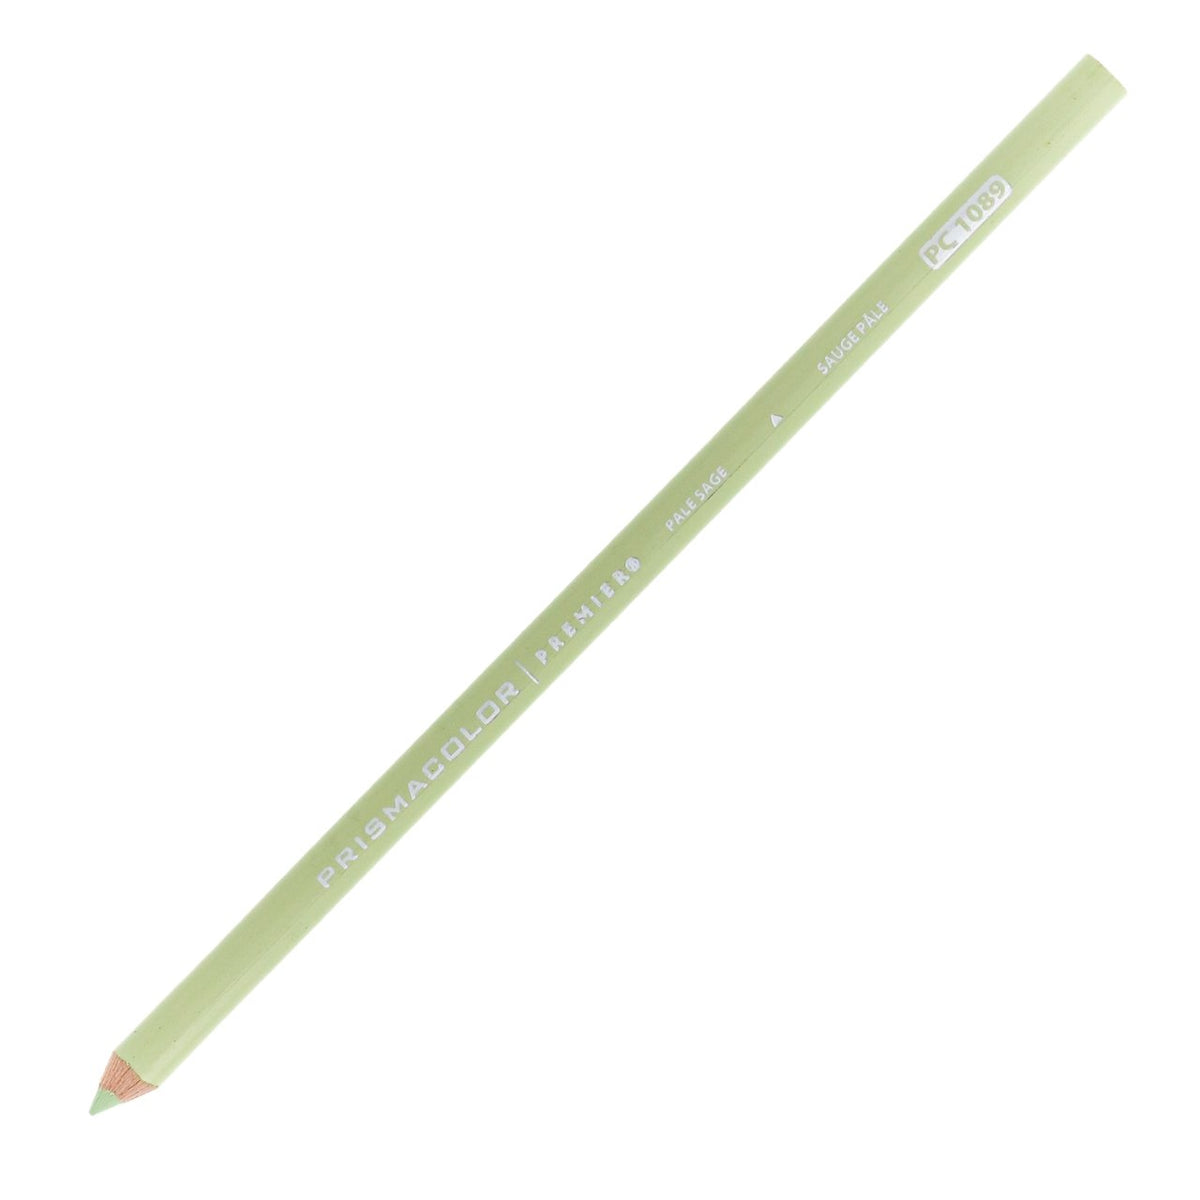 Prismacolor Premier Colored Pencil - Pale Sage 1089 - merriartist.com